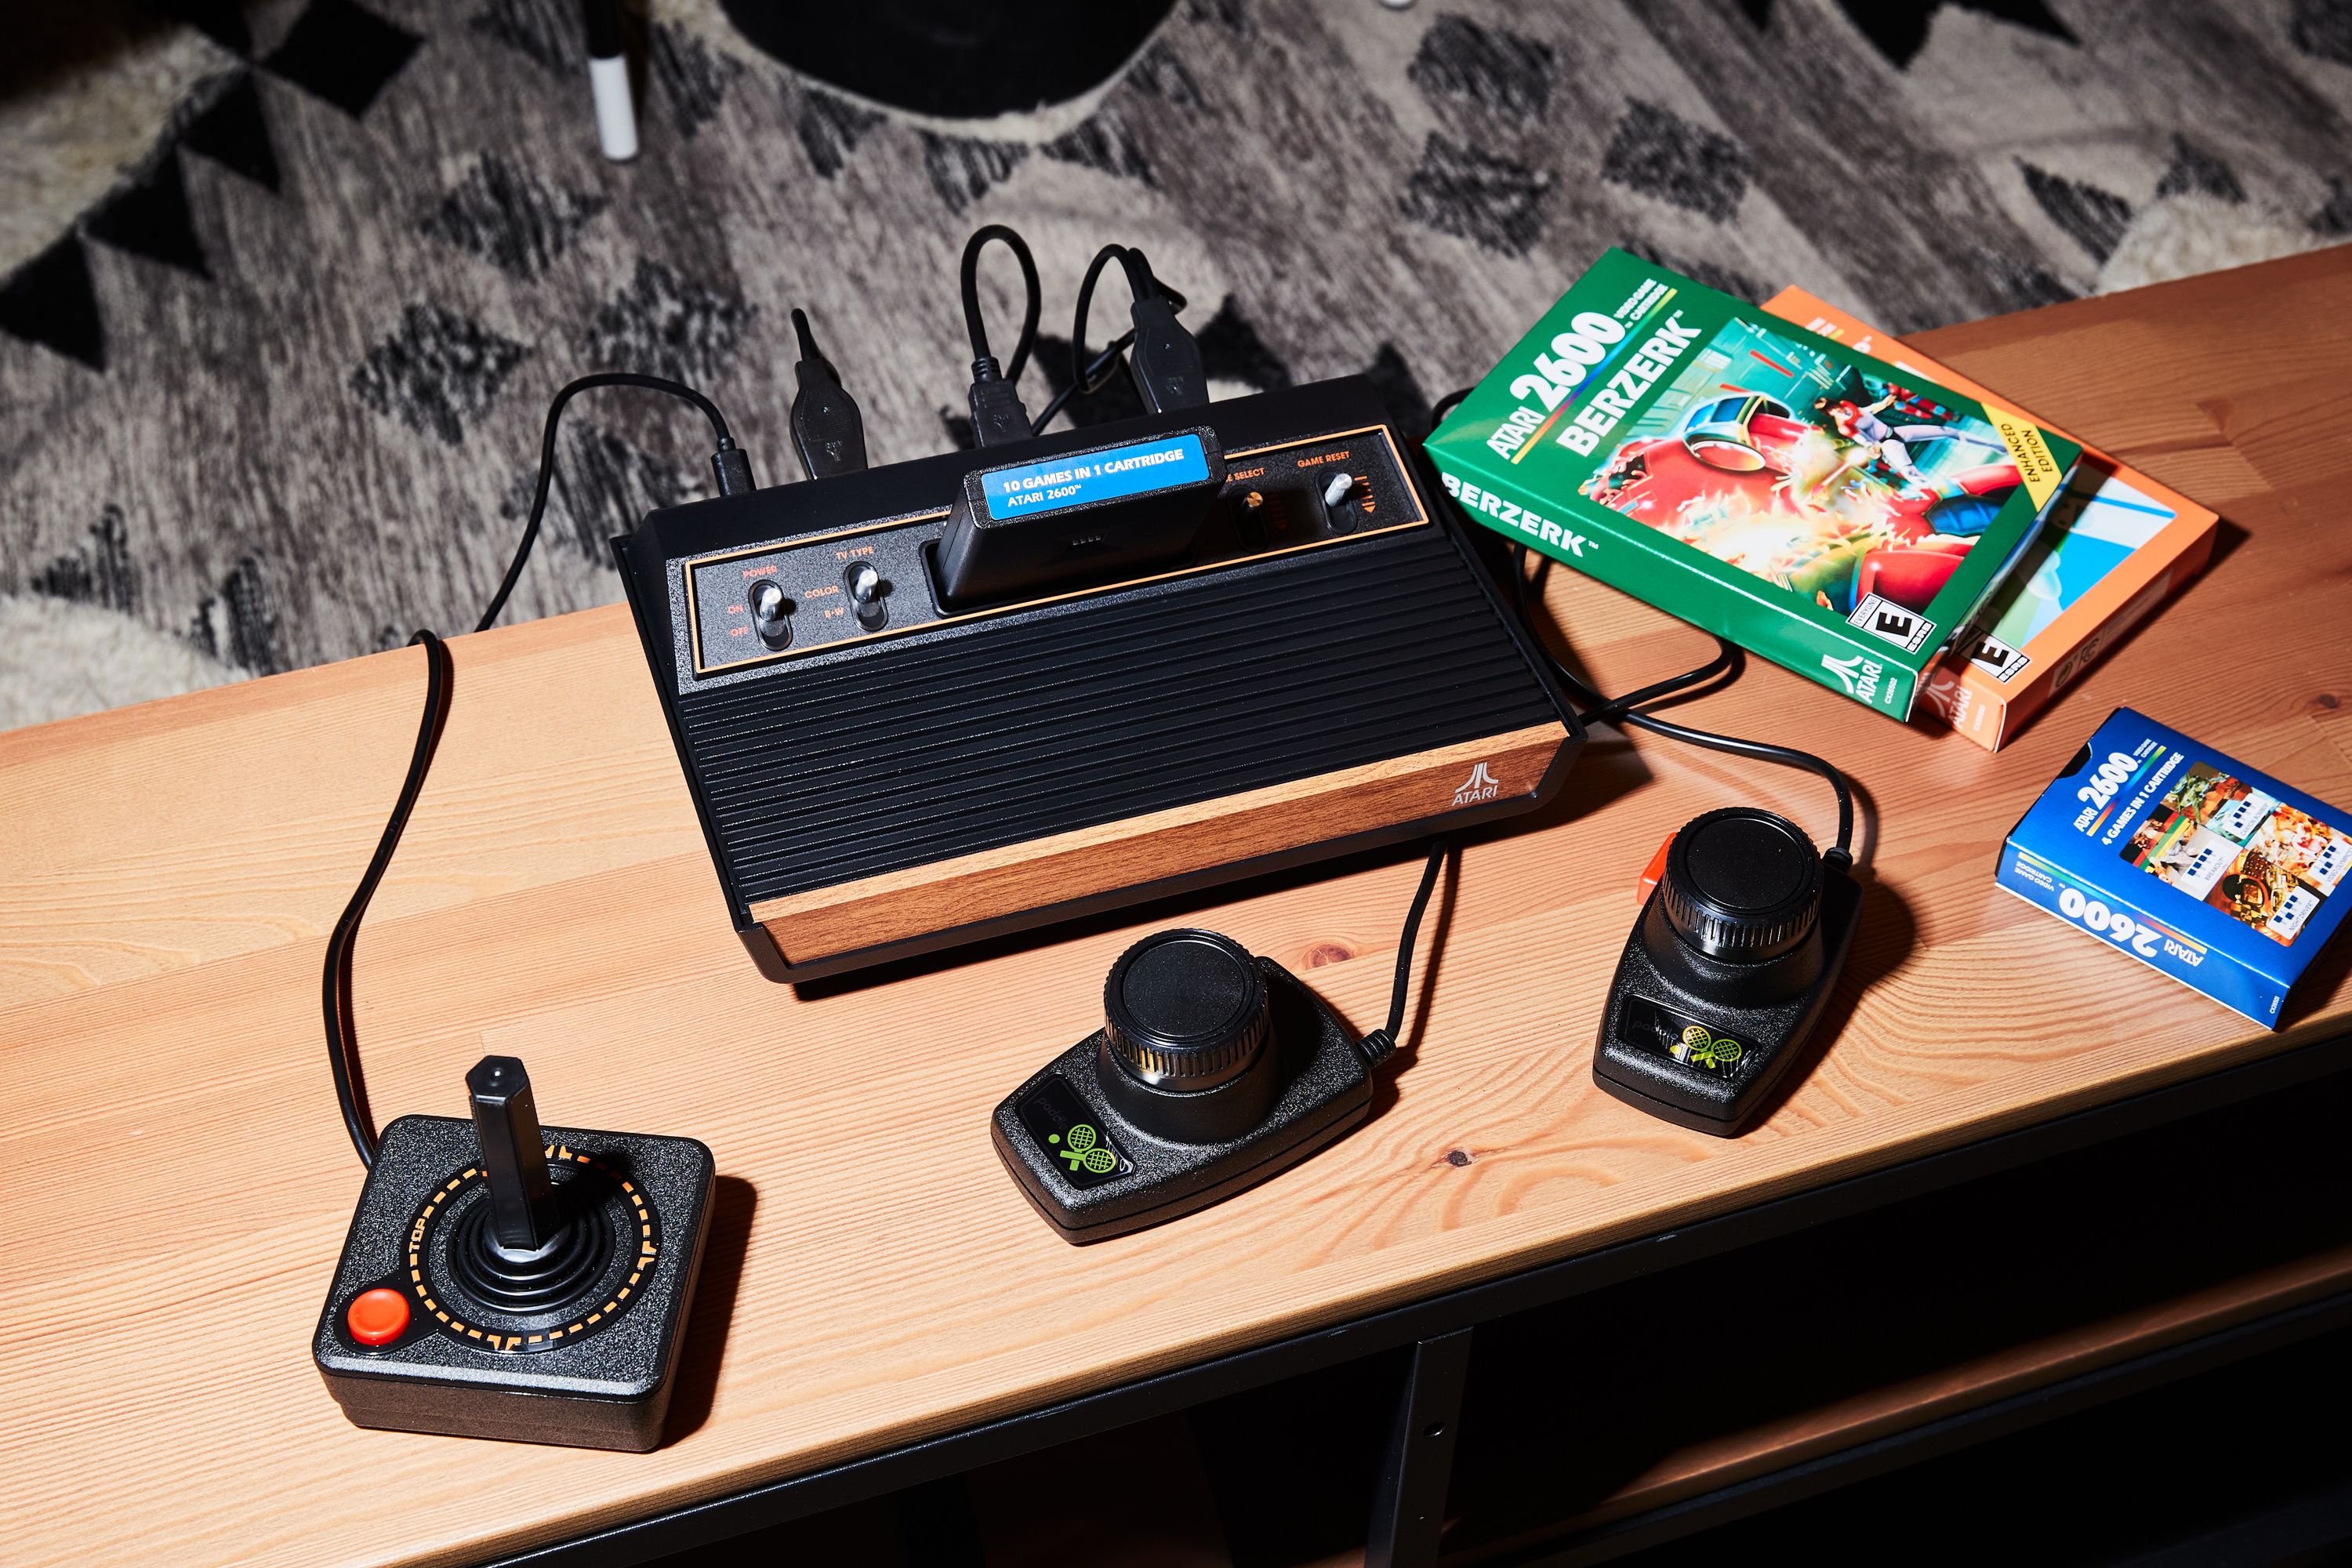 Atari 2600 Plus 10 Games in 1 - Atari 2600